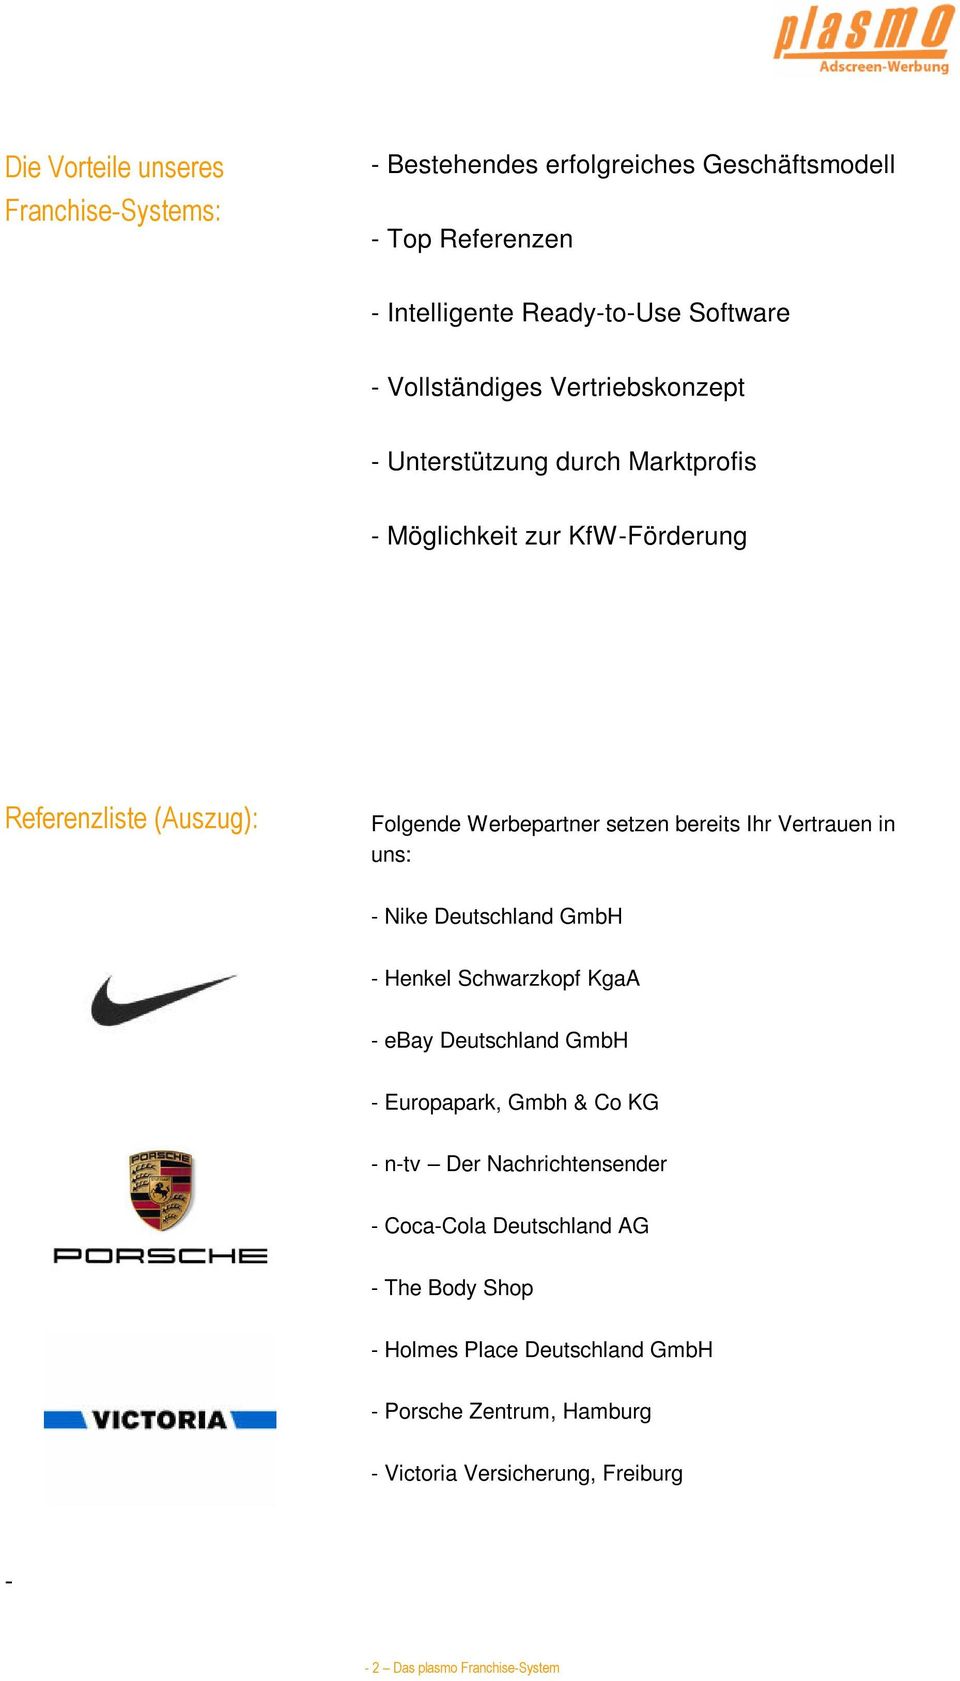 Vertrauen in uns: - Nike Deutschland GmbH - Henkel Schwarzkopf KgaA - ebay Deutschland GmbH - Europapark, Gmbh & Co KG - n-tv Der Nachrichtensender -